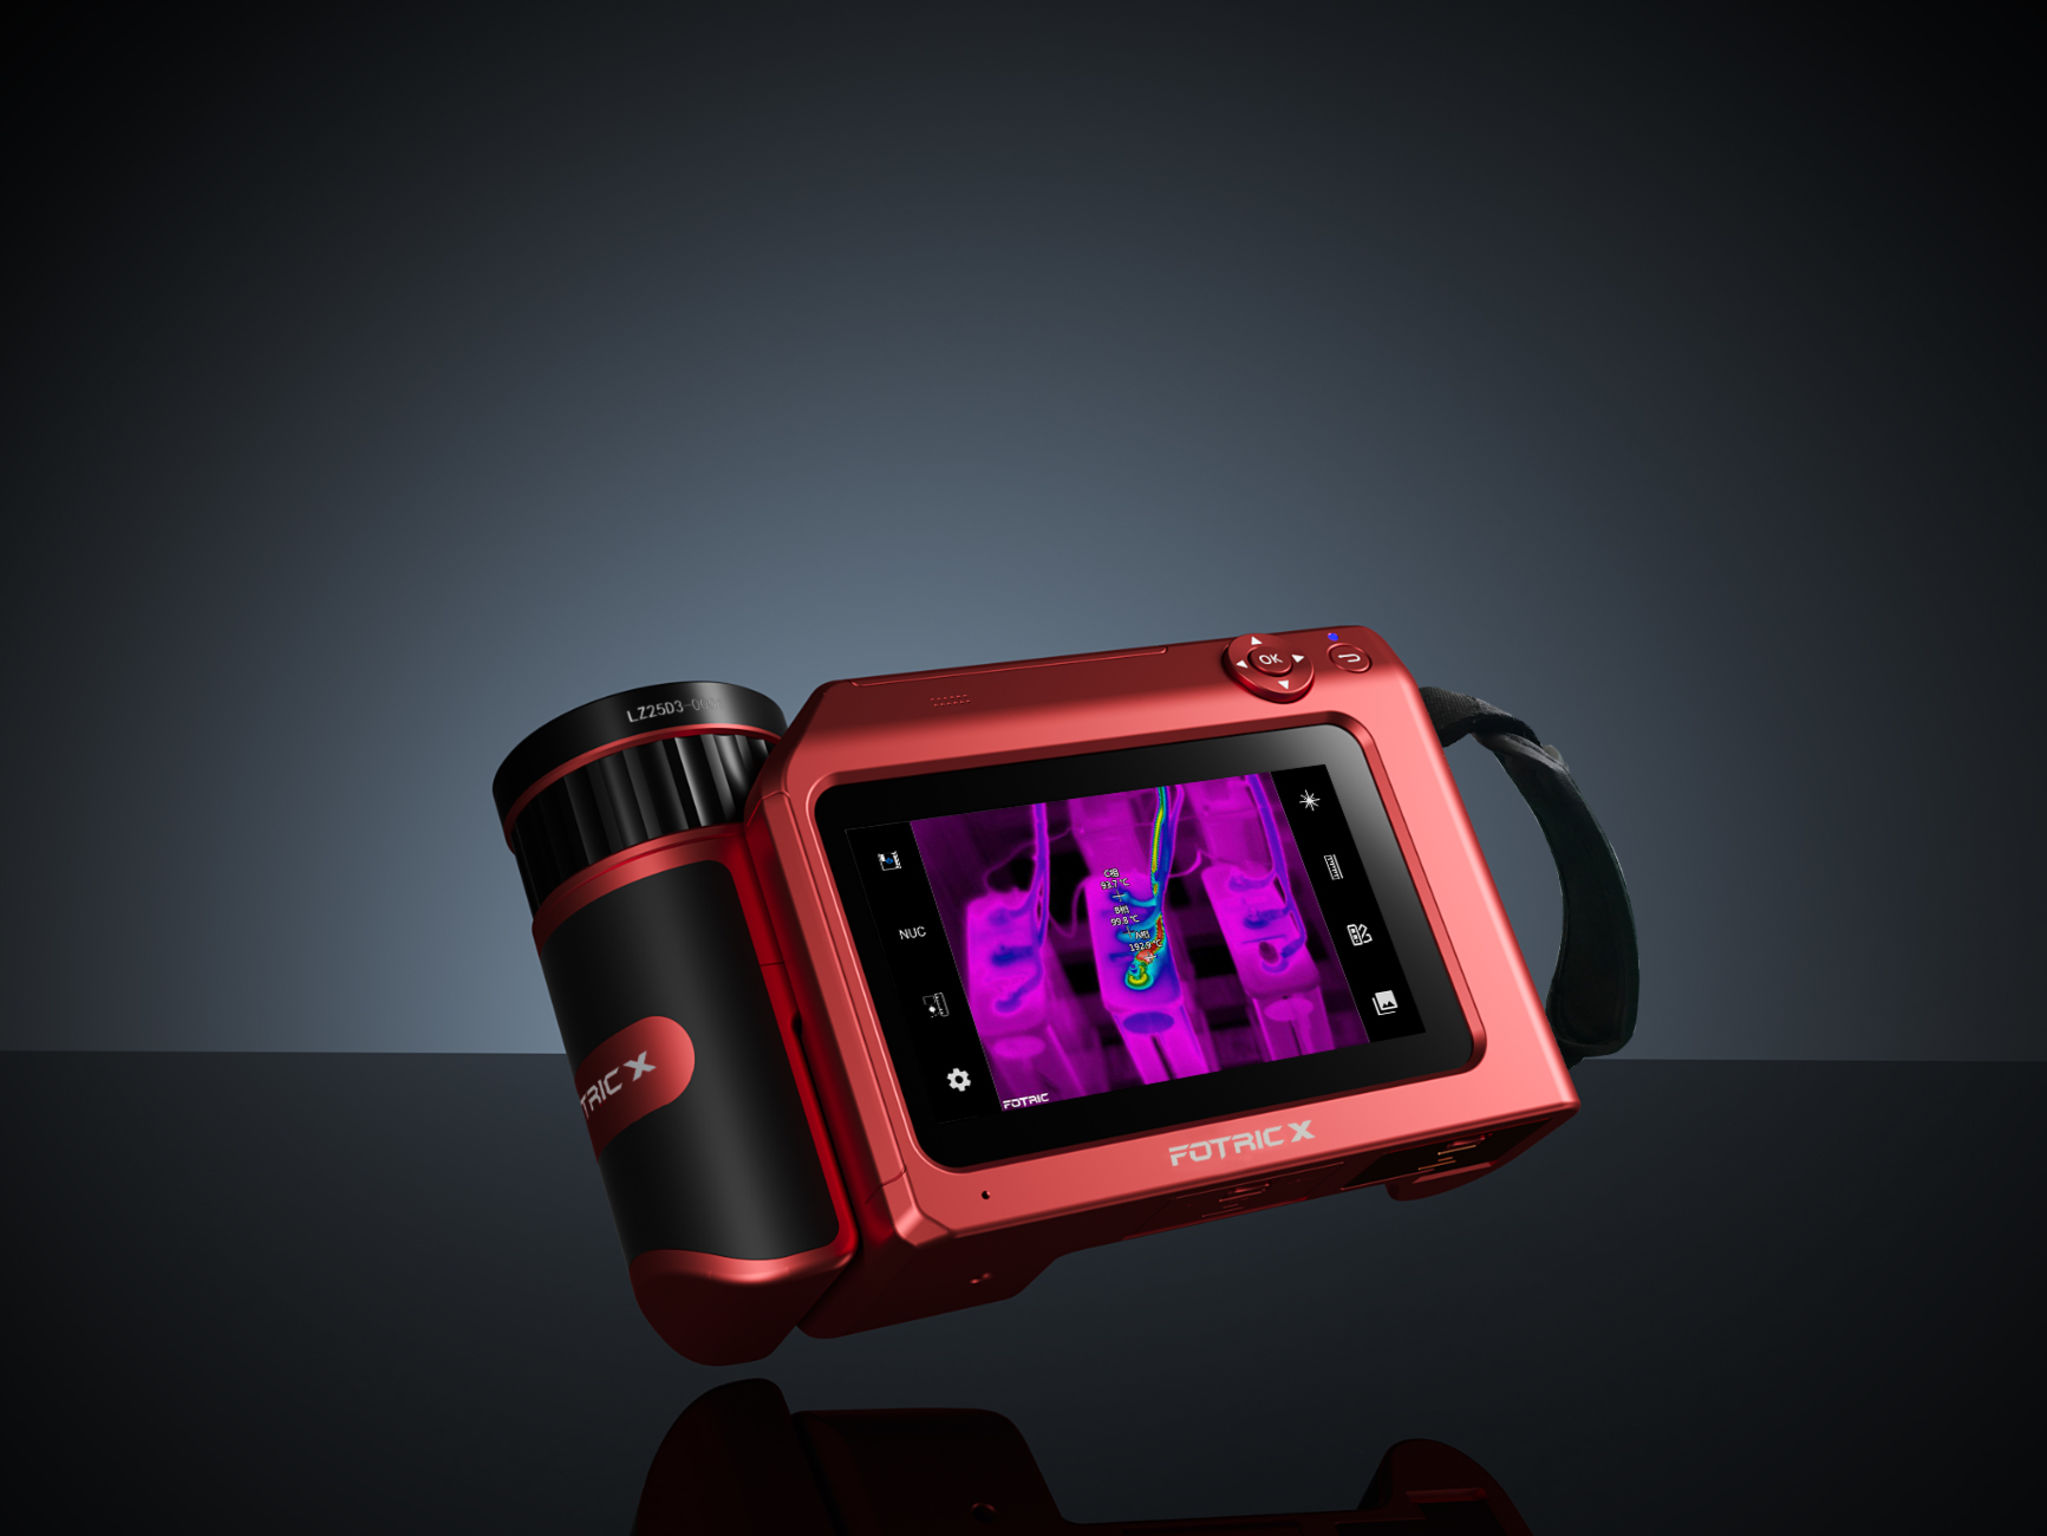 FOTRIC X Thermal Camera